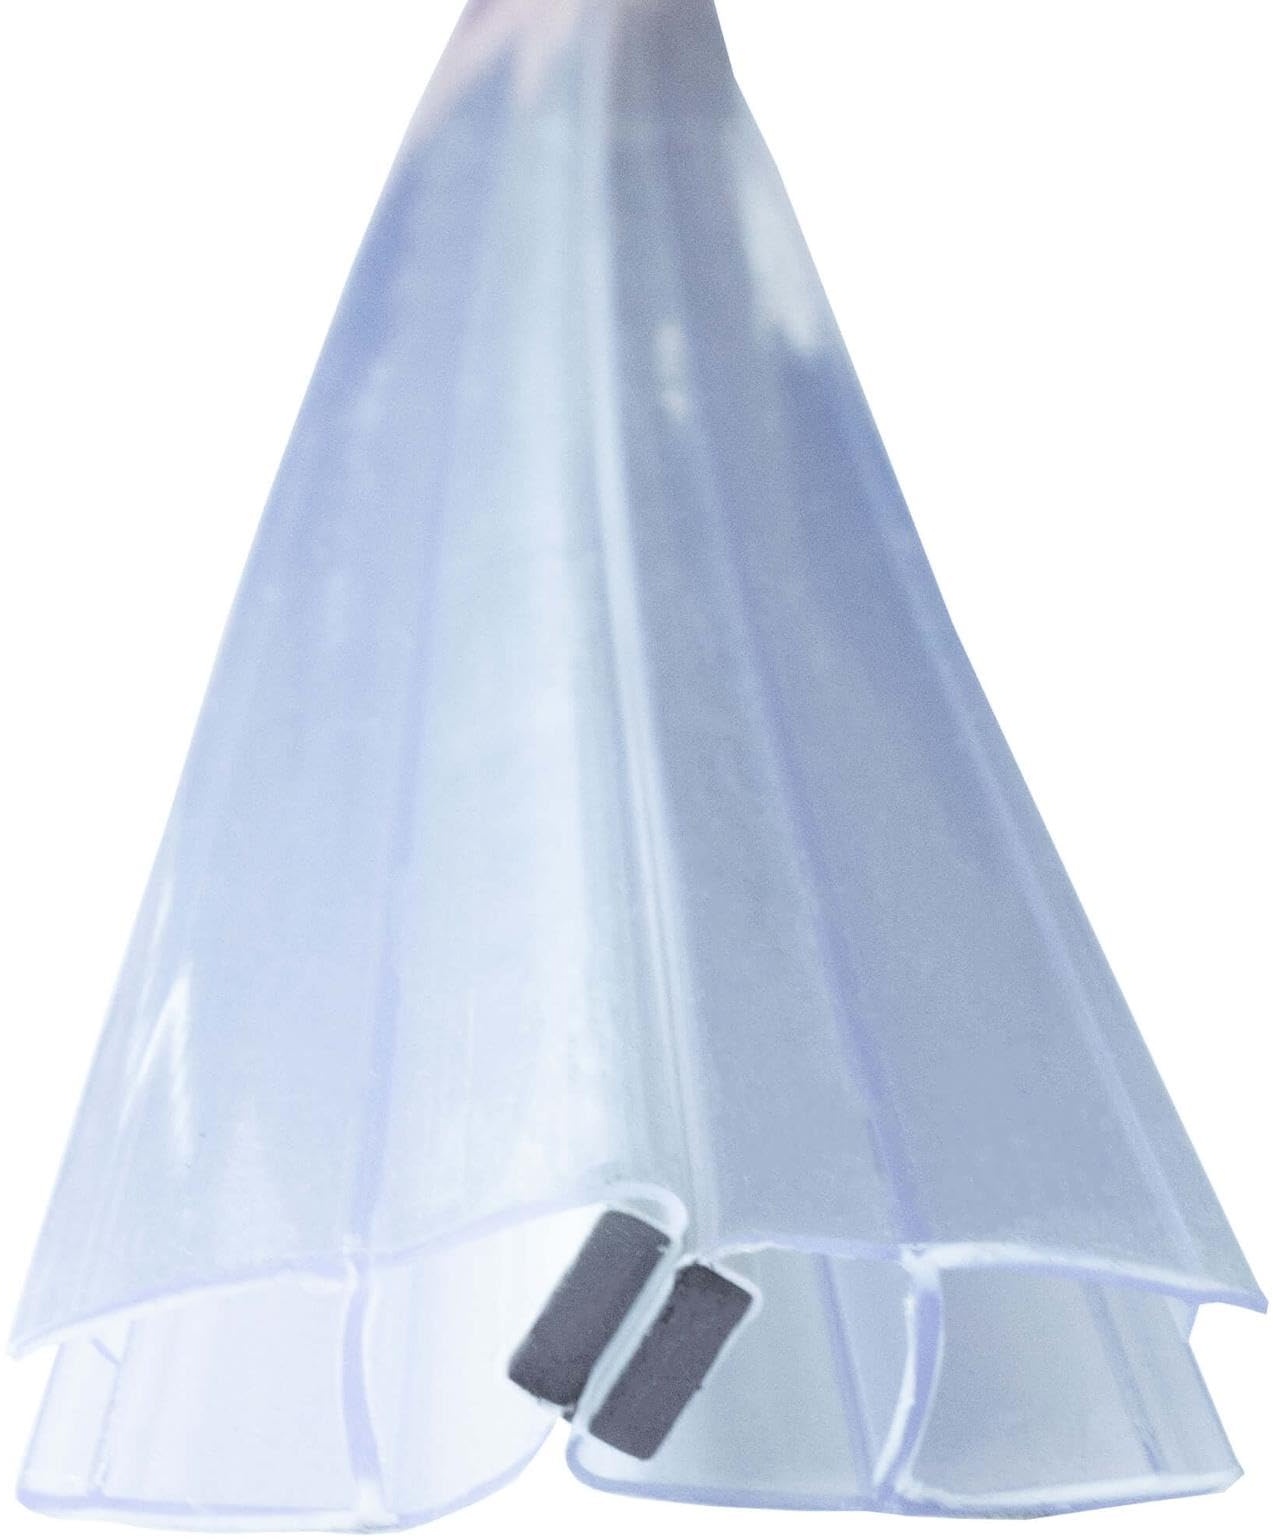 Duschdichtung Magnetdichtung für Duschtüren Transparent 8mm Glasstärke Schließwinkel von 135 und 180 Grad, versetzt, PVC Duschlippe